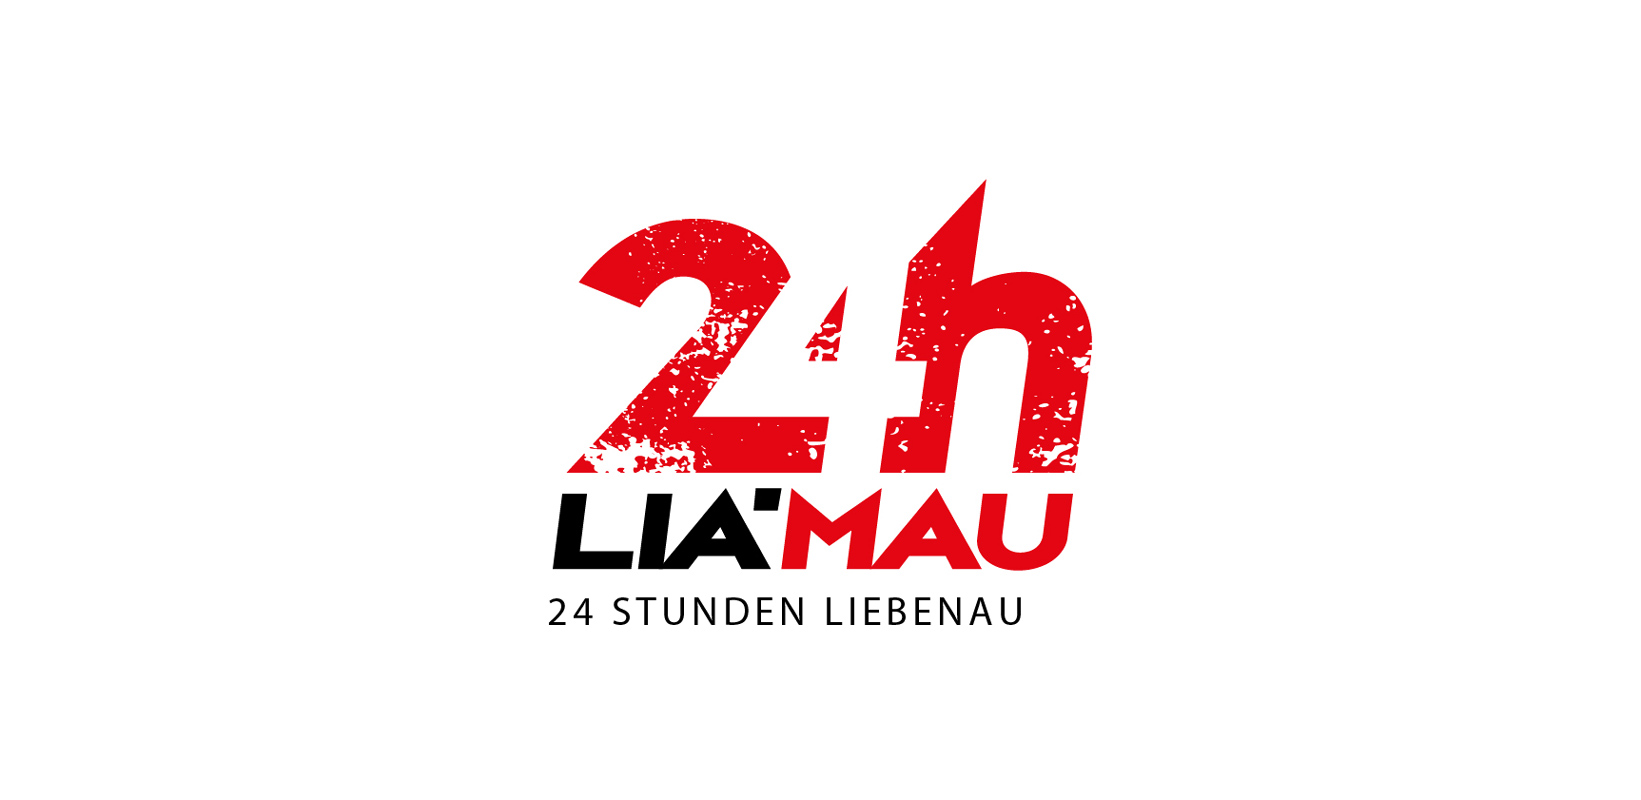 24h LiaMau – Abgesagt!